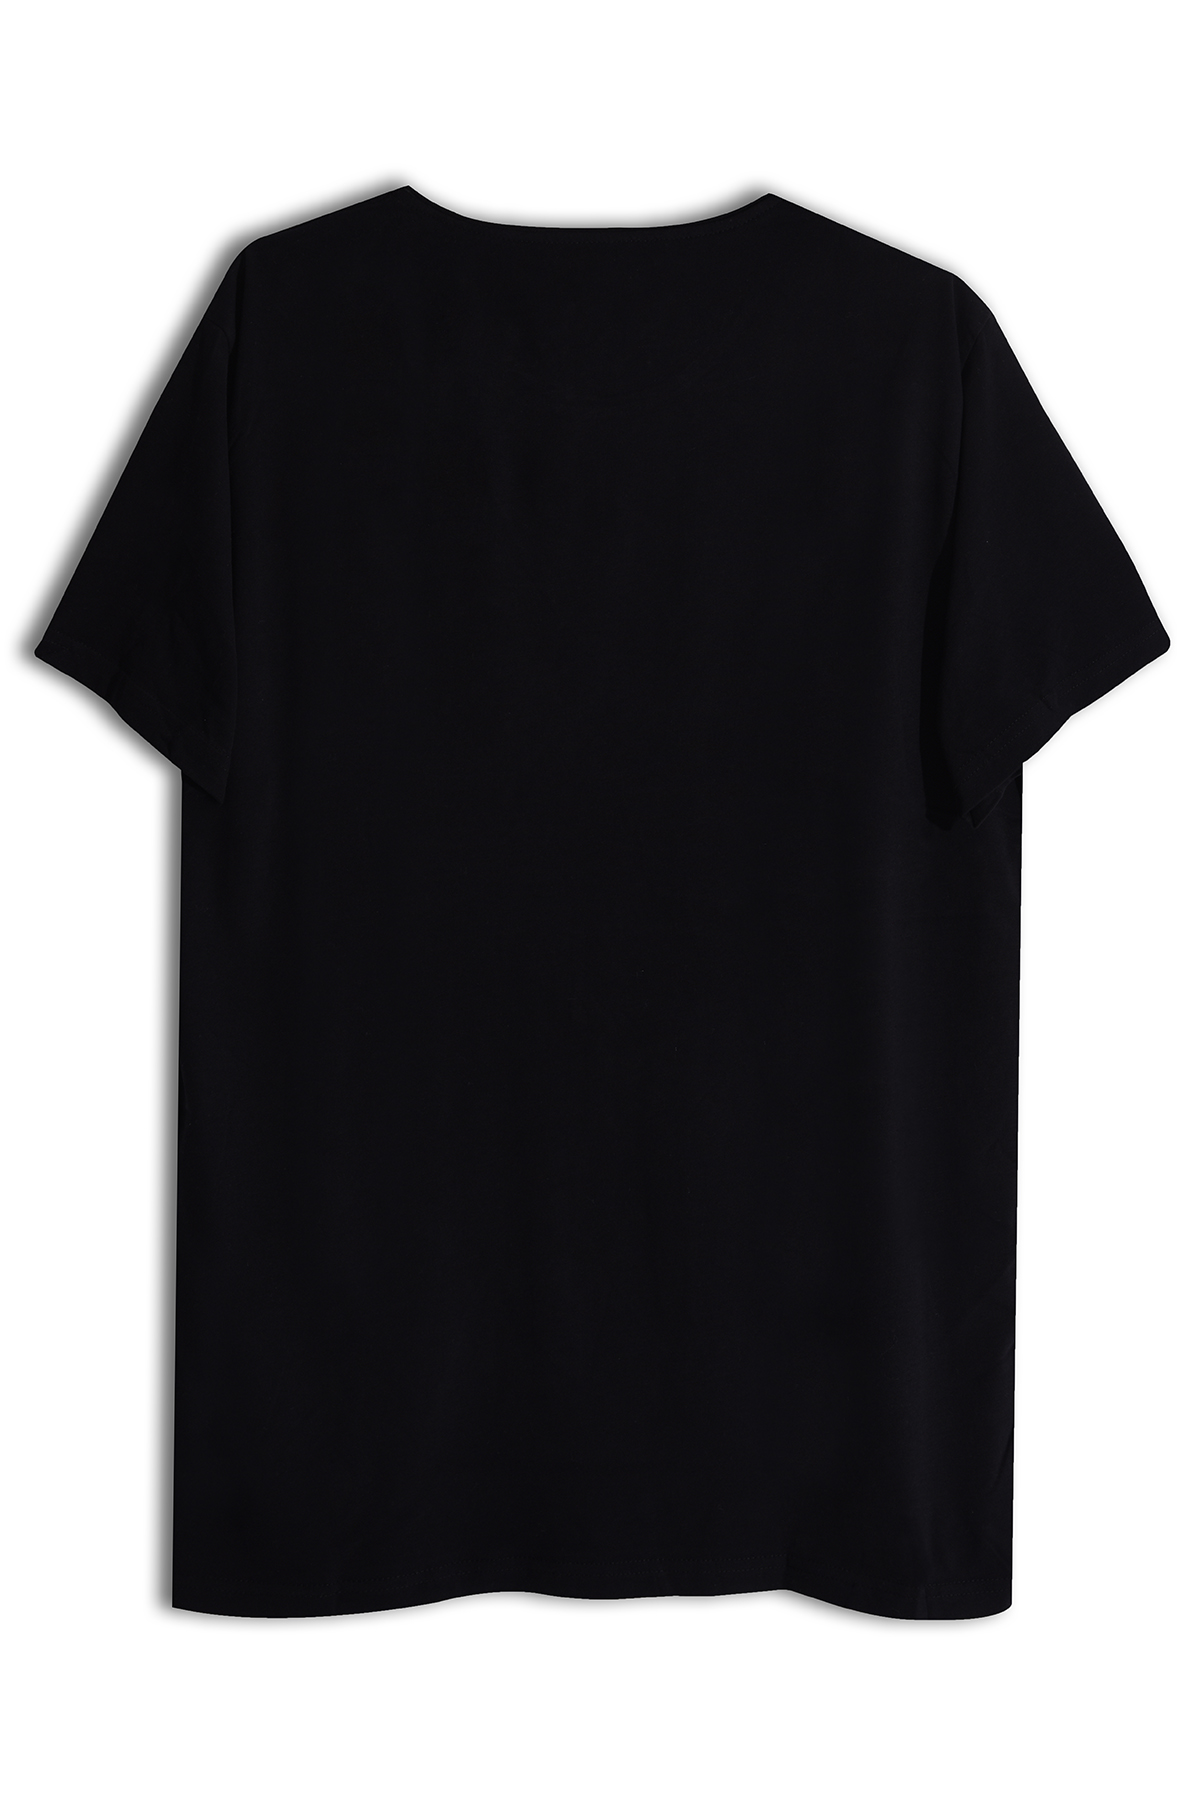 Hadis Tasarım Pamuk Siyah T-shirt